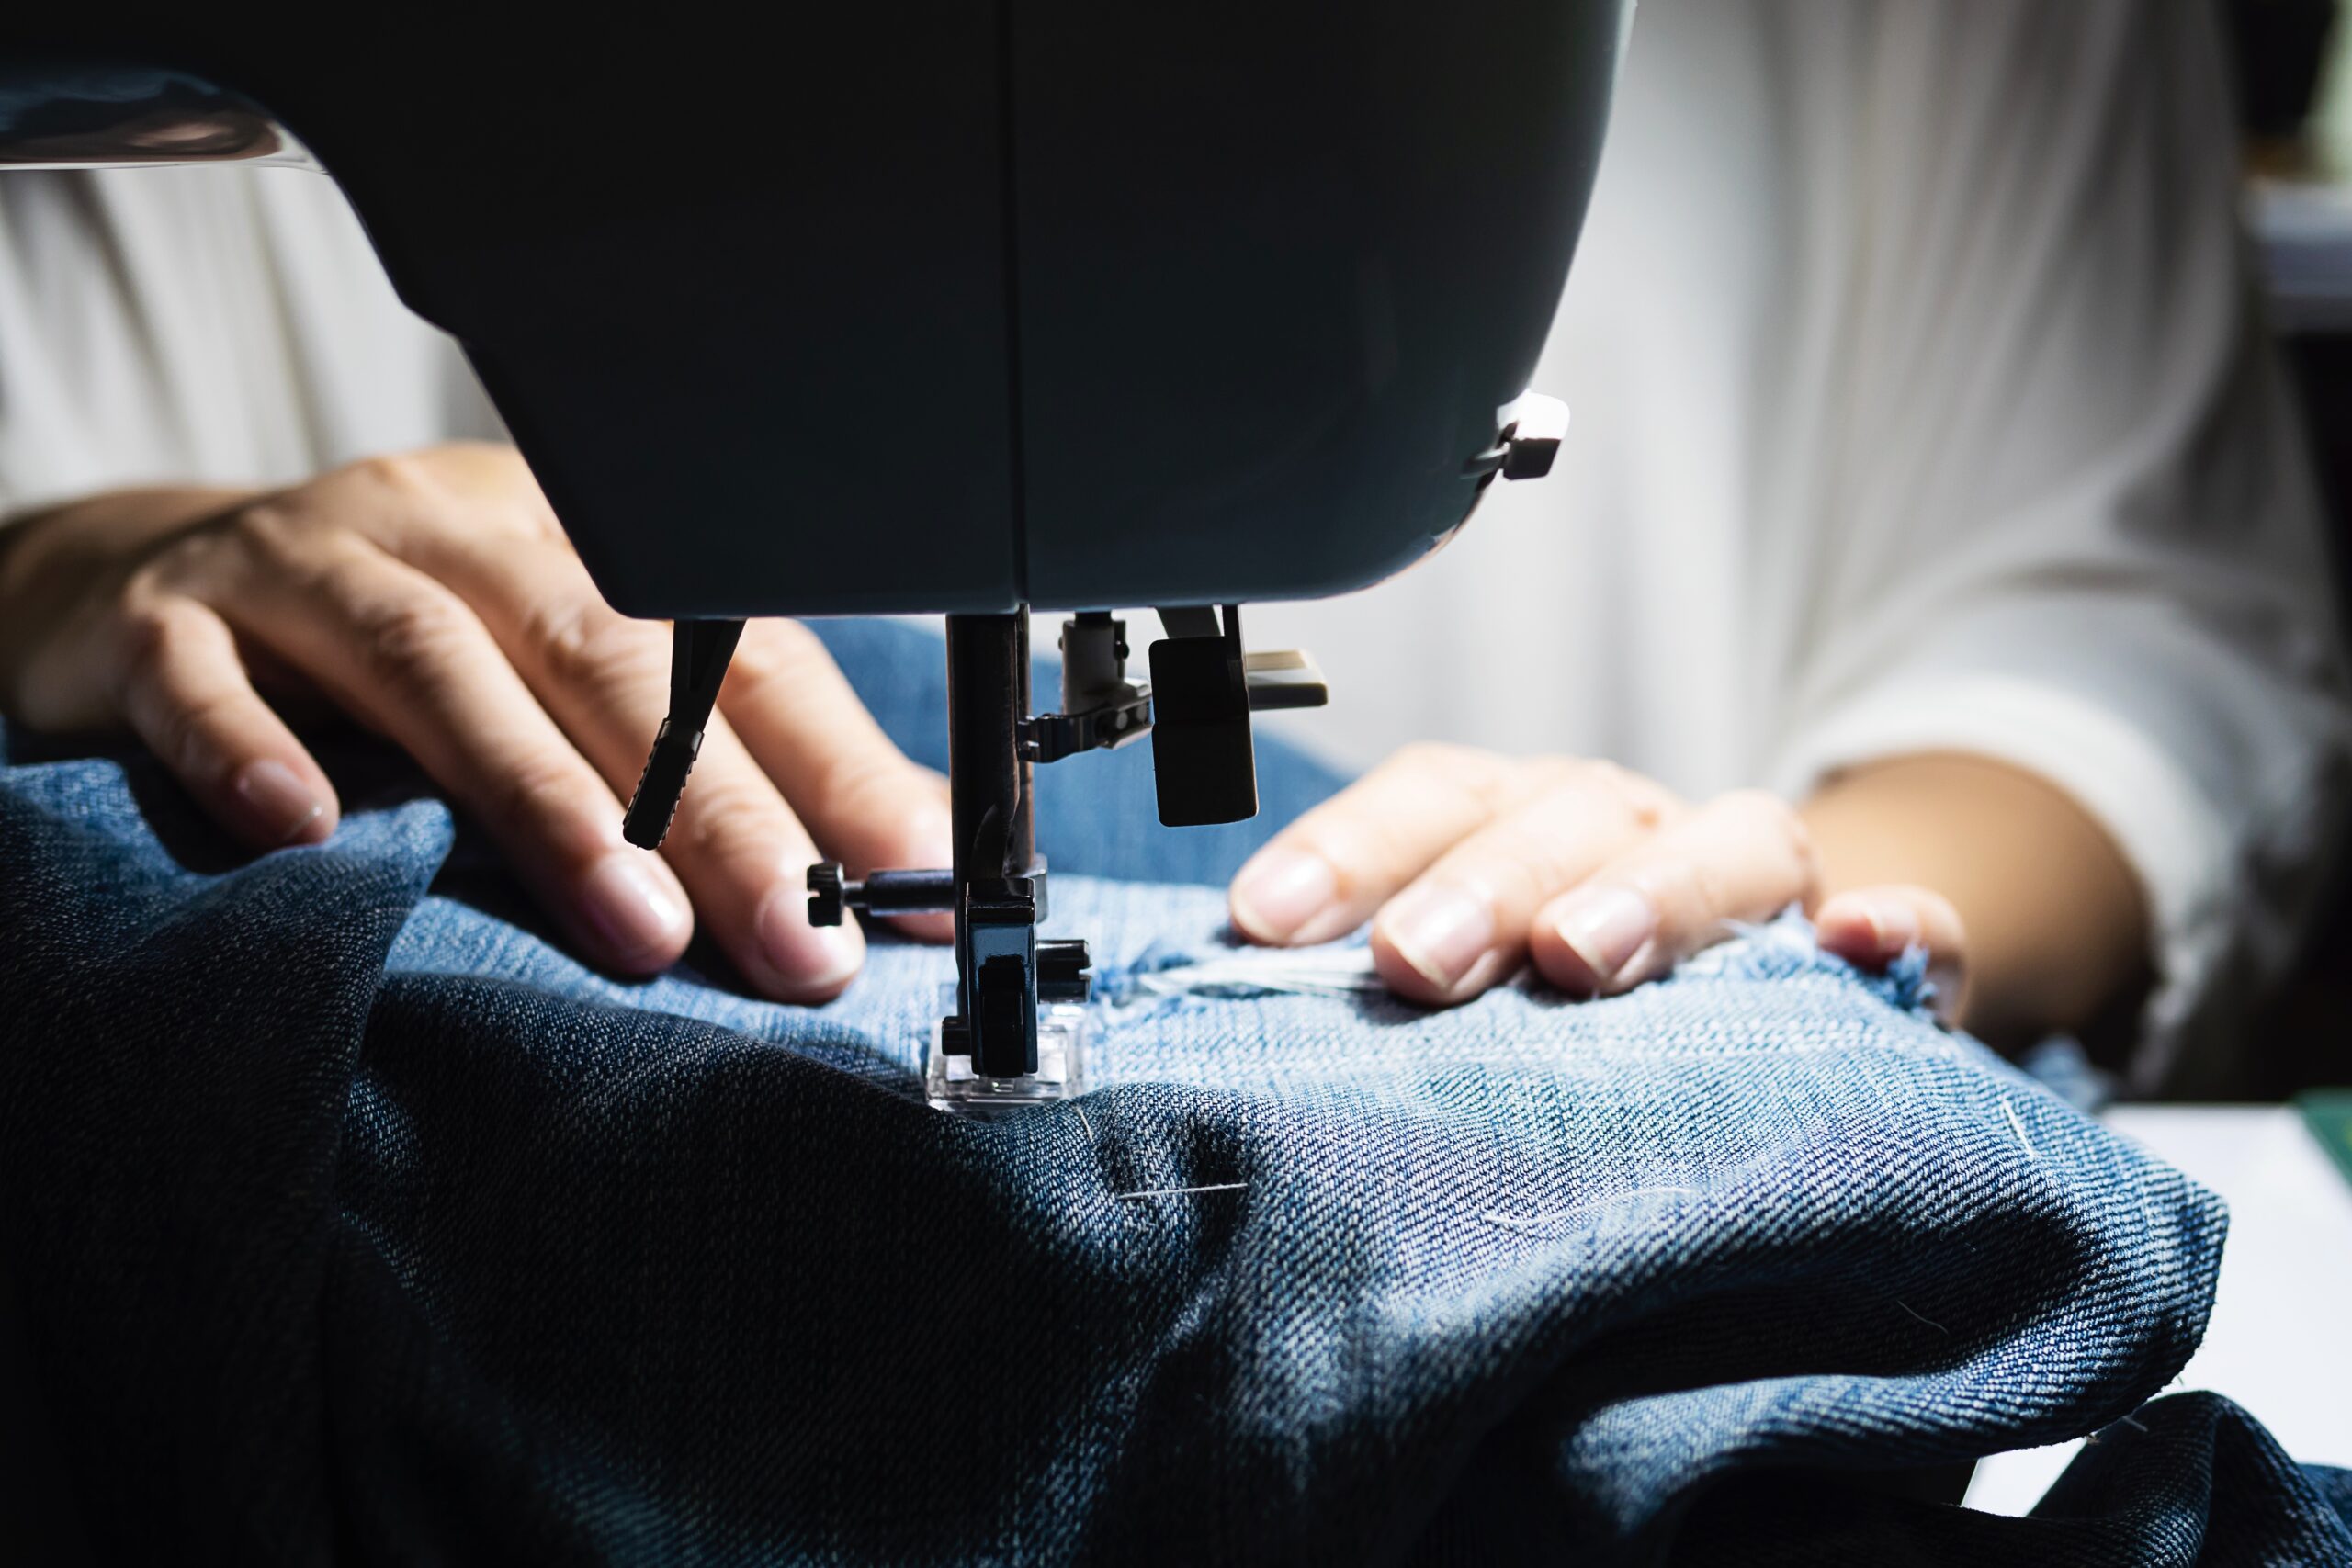 mujer haciendo remiendo jeans usando maquina coser concepto costura bricolaje casero scaled